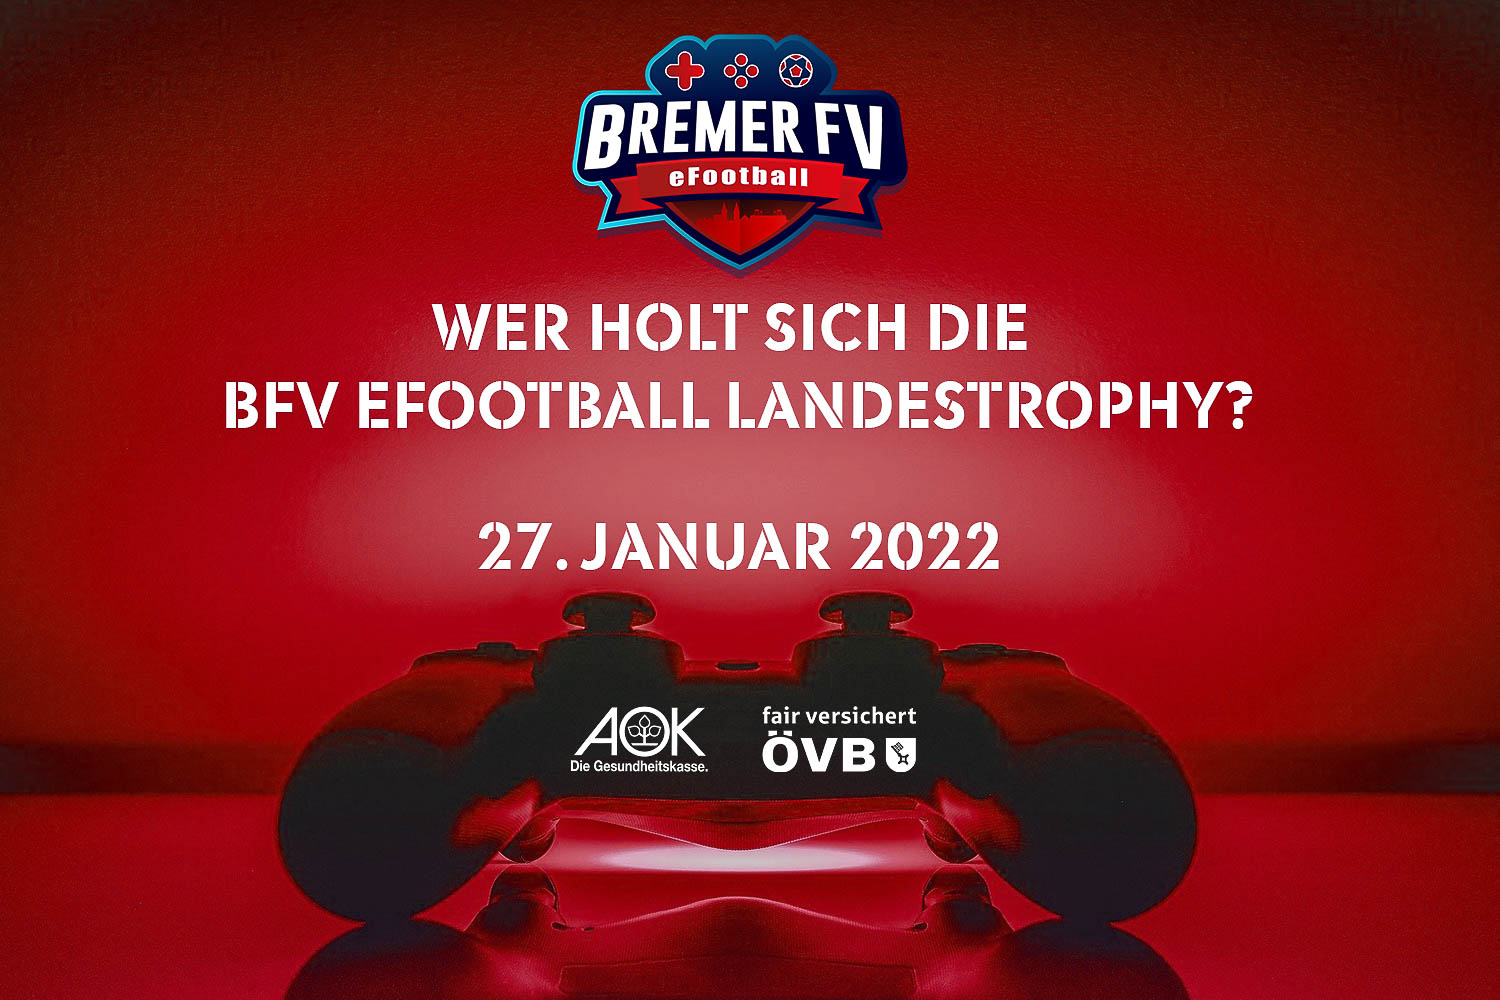 Am 27. Januar gibt es wieder die BFV eFootball Landestrophy. Wer sichert sich den Einzug in den DFB ePokal? (Grafik: David Dischinger)